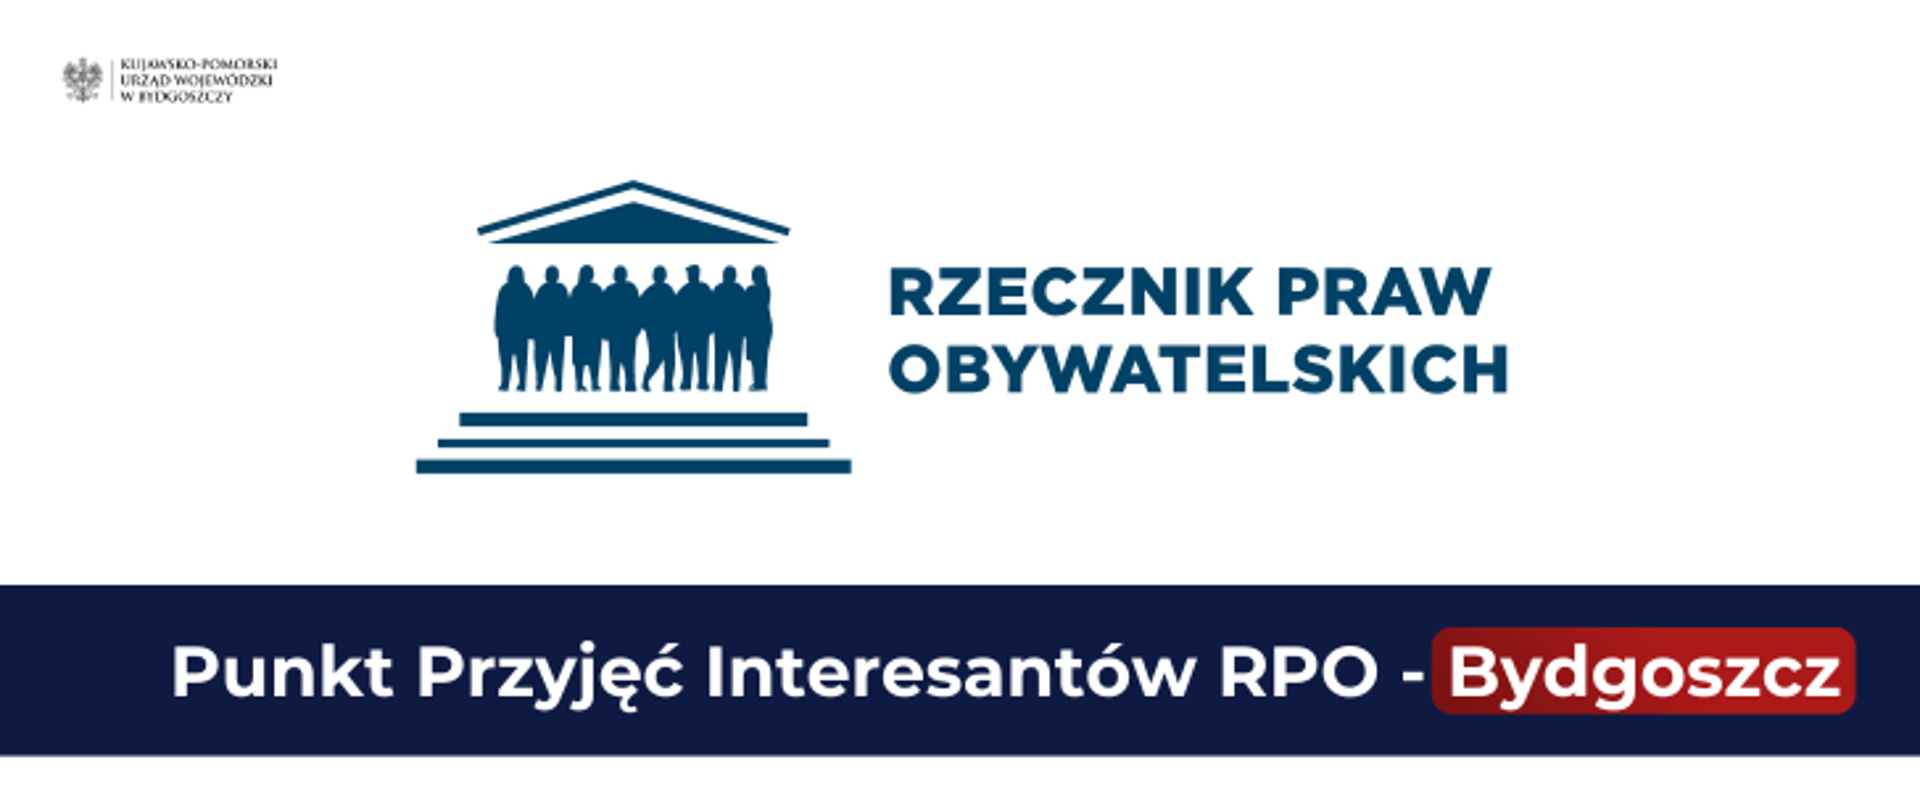 Punkt Przyjęć Interesantów Rzecznika Praw Obywatelskich w Bydgoszczy
